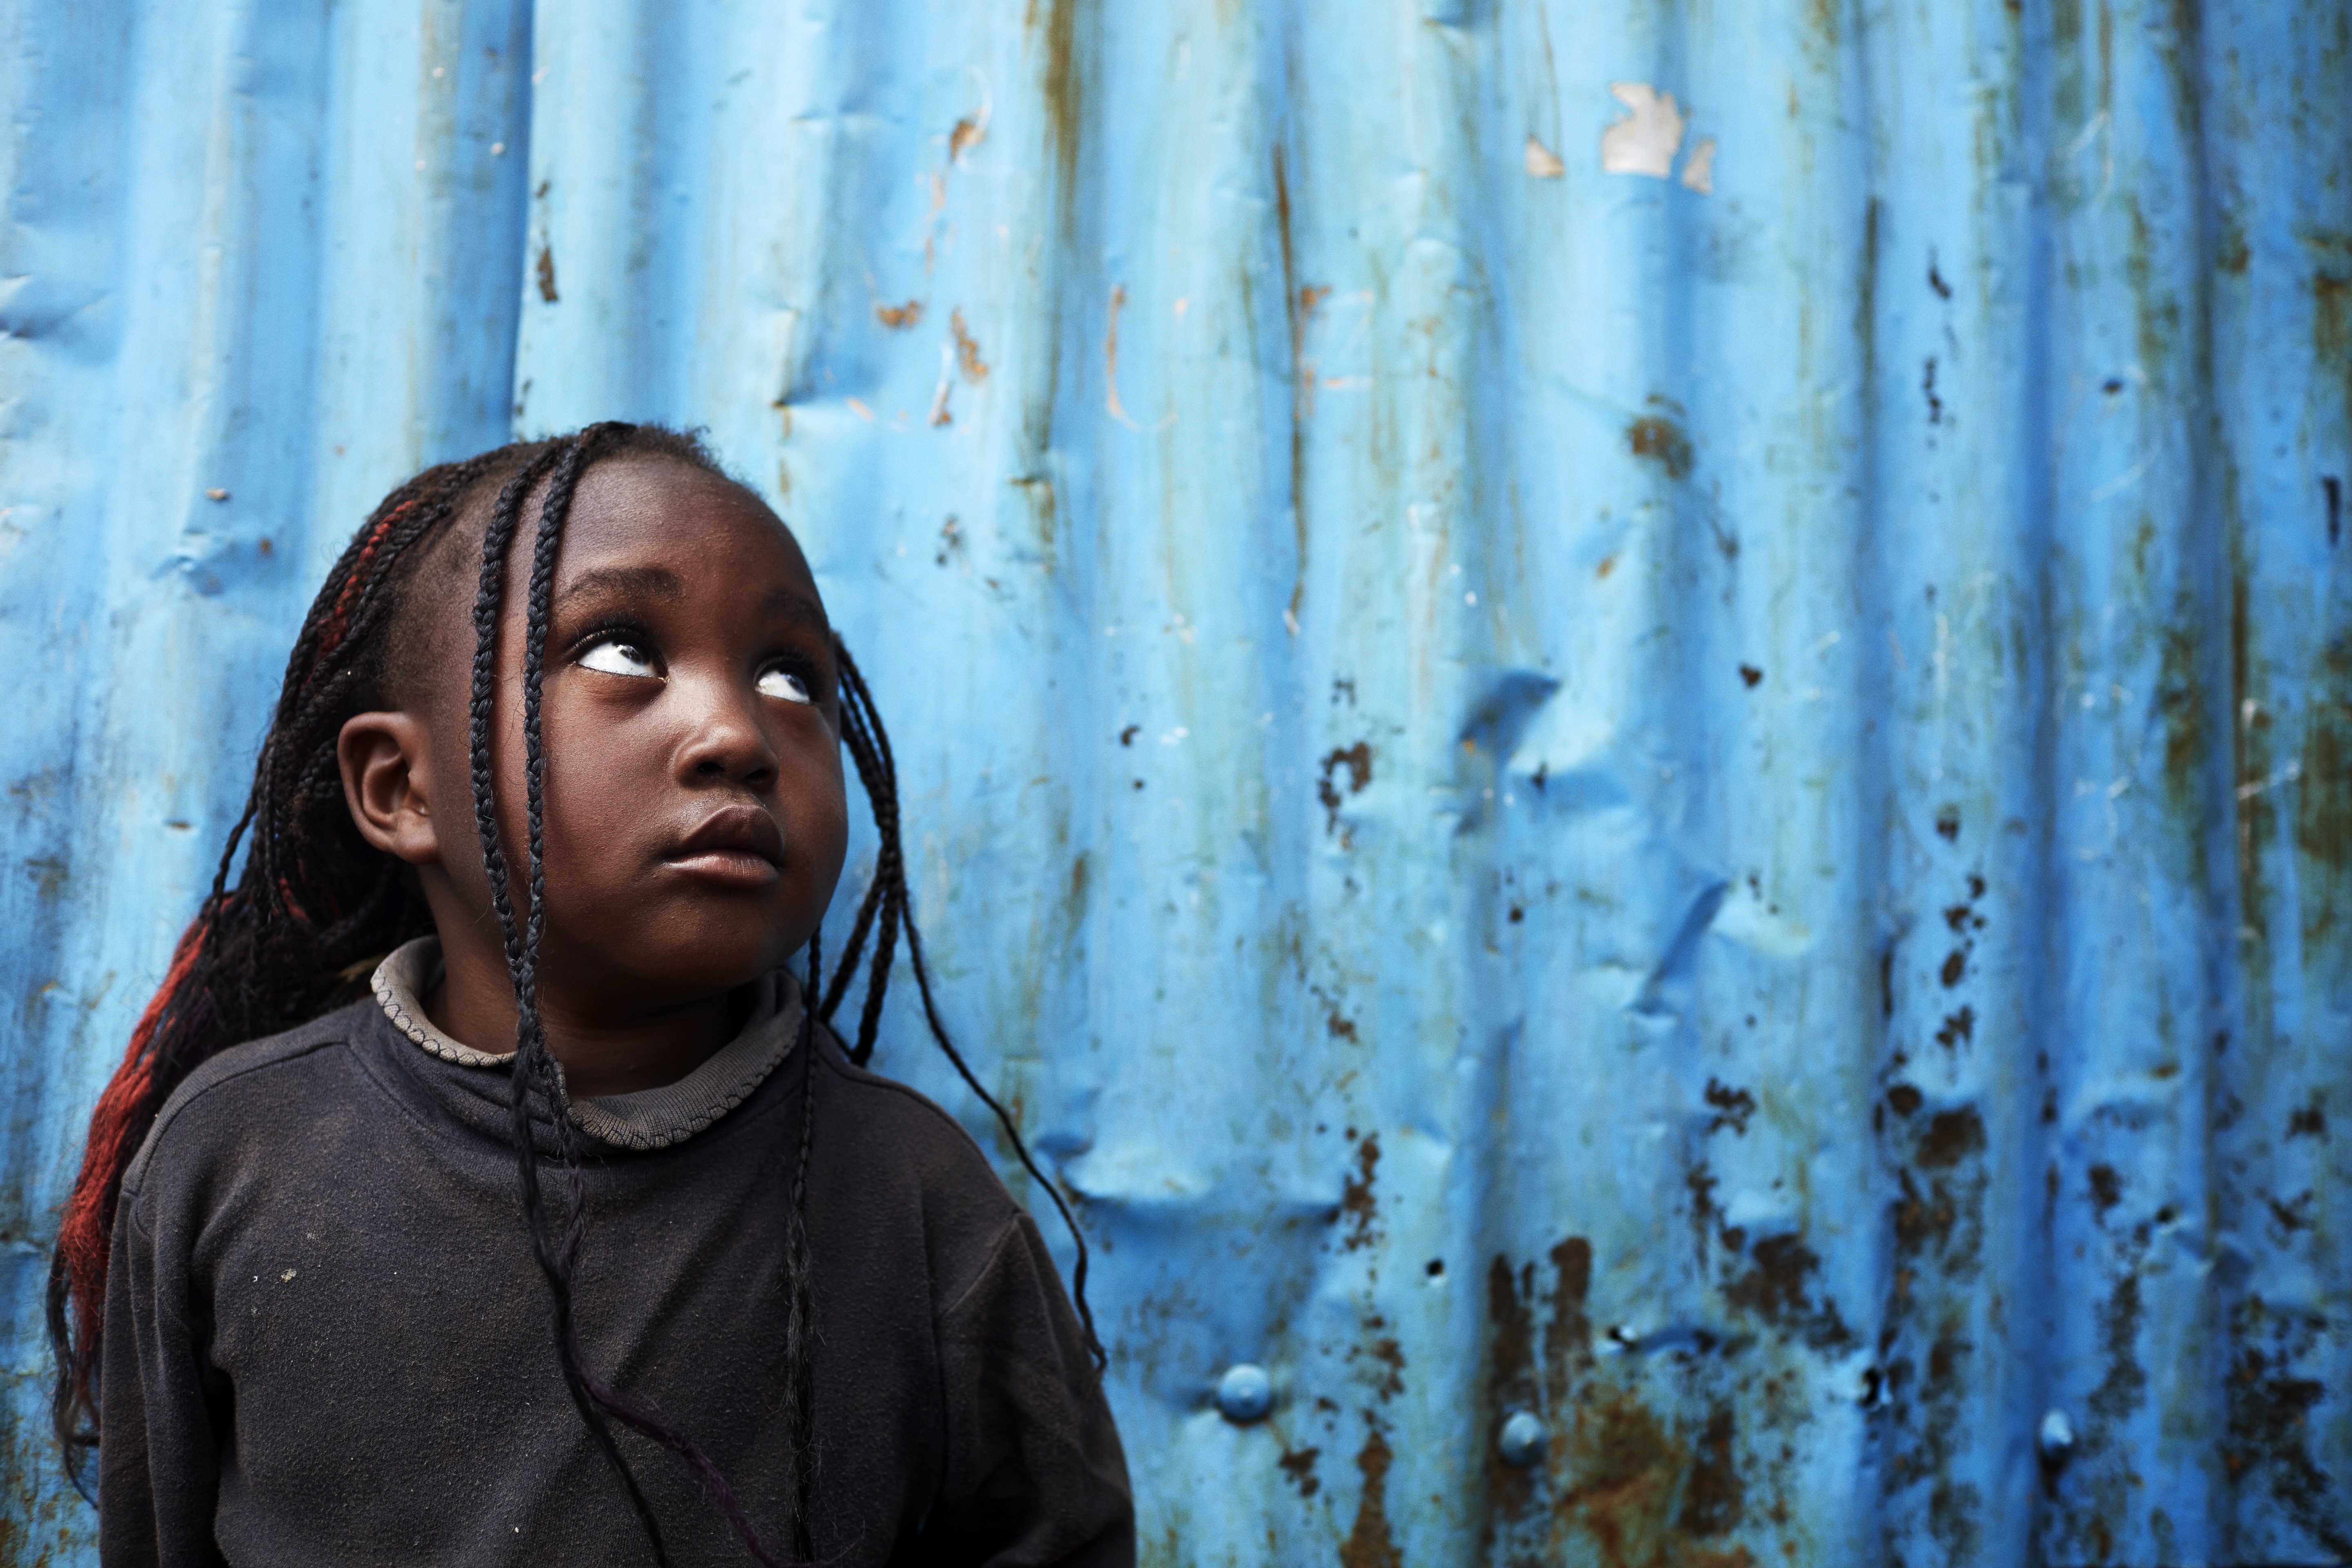 Gemme Praktisk dannelse ECCO Walkathon 2018: Hjælp børn i Nairobis slum